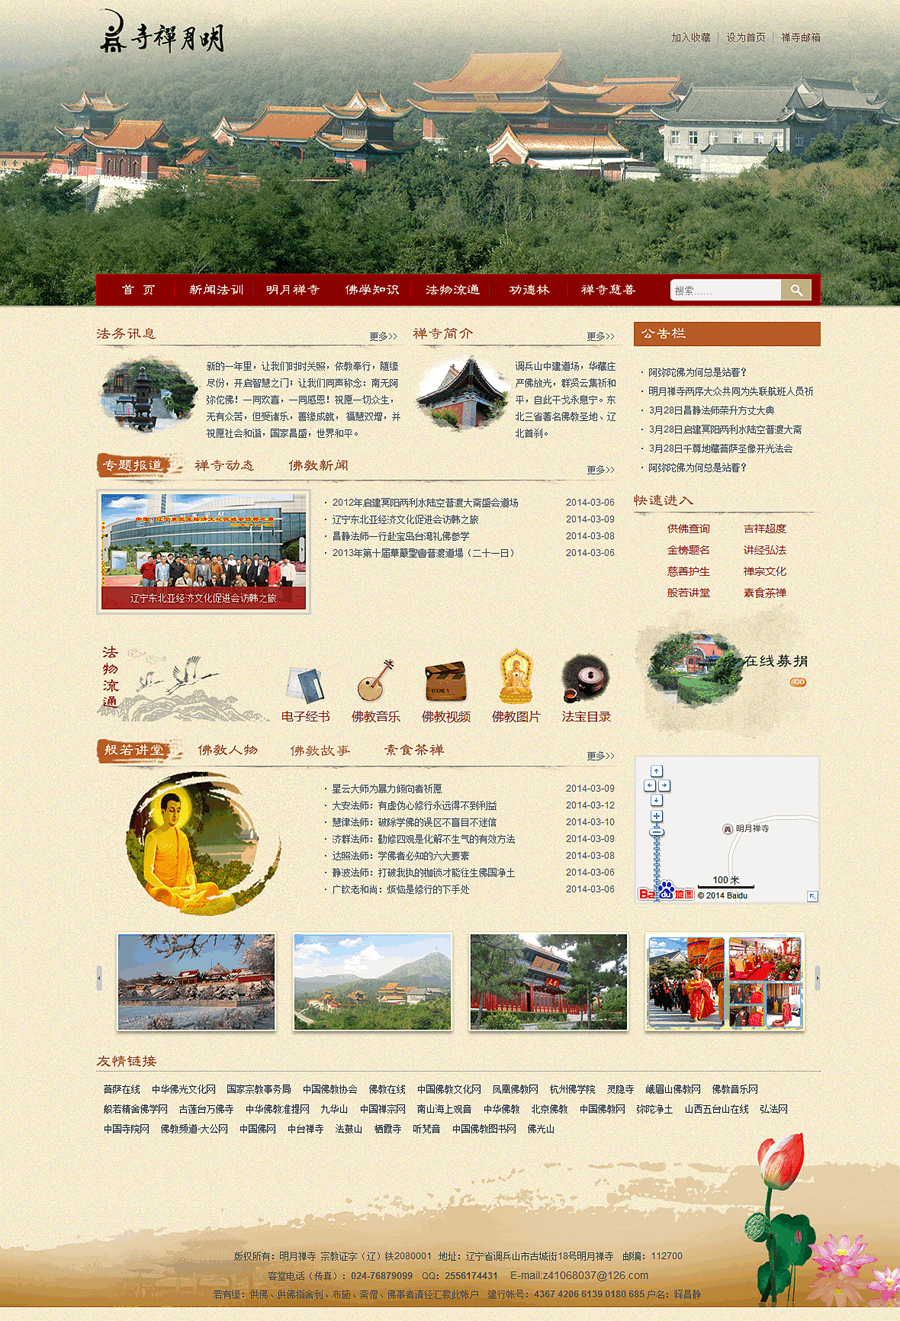 明月禅寺网站设计开发